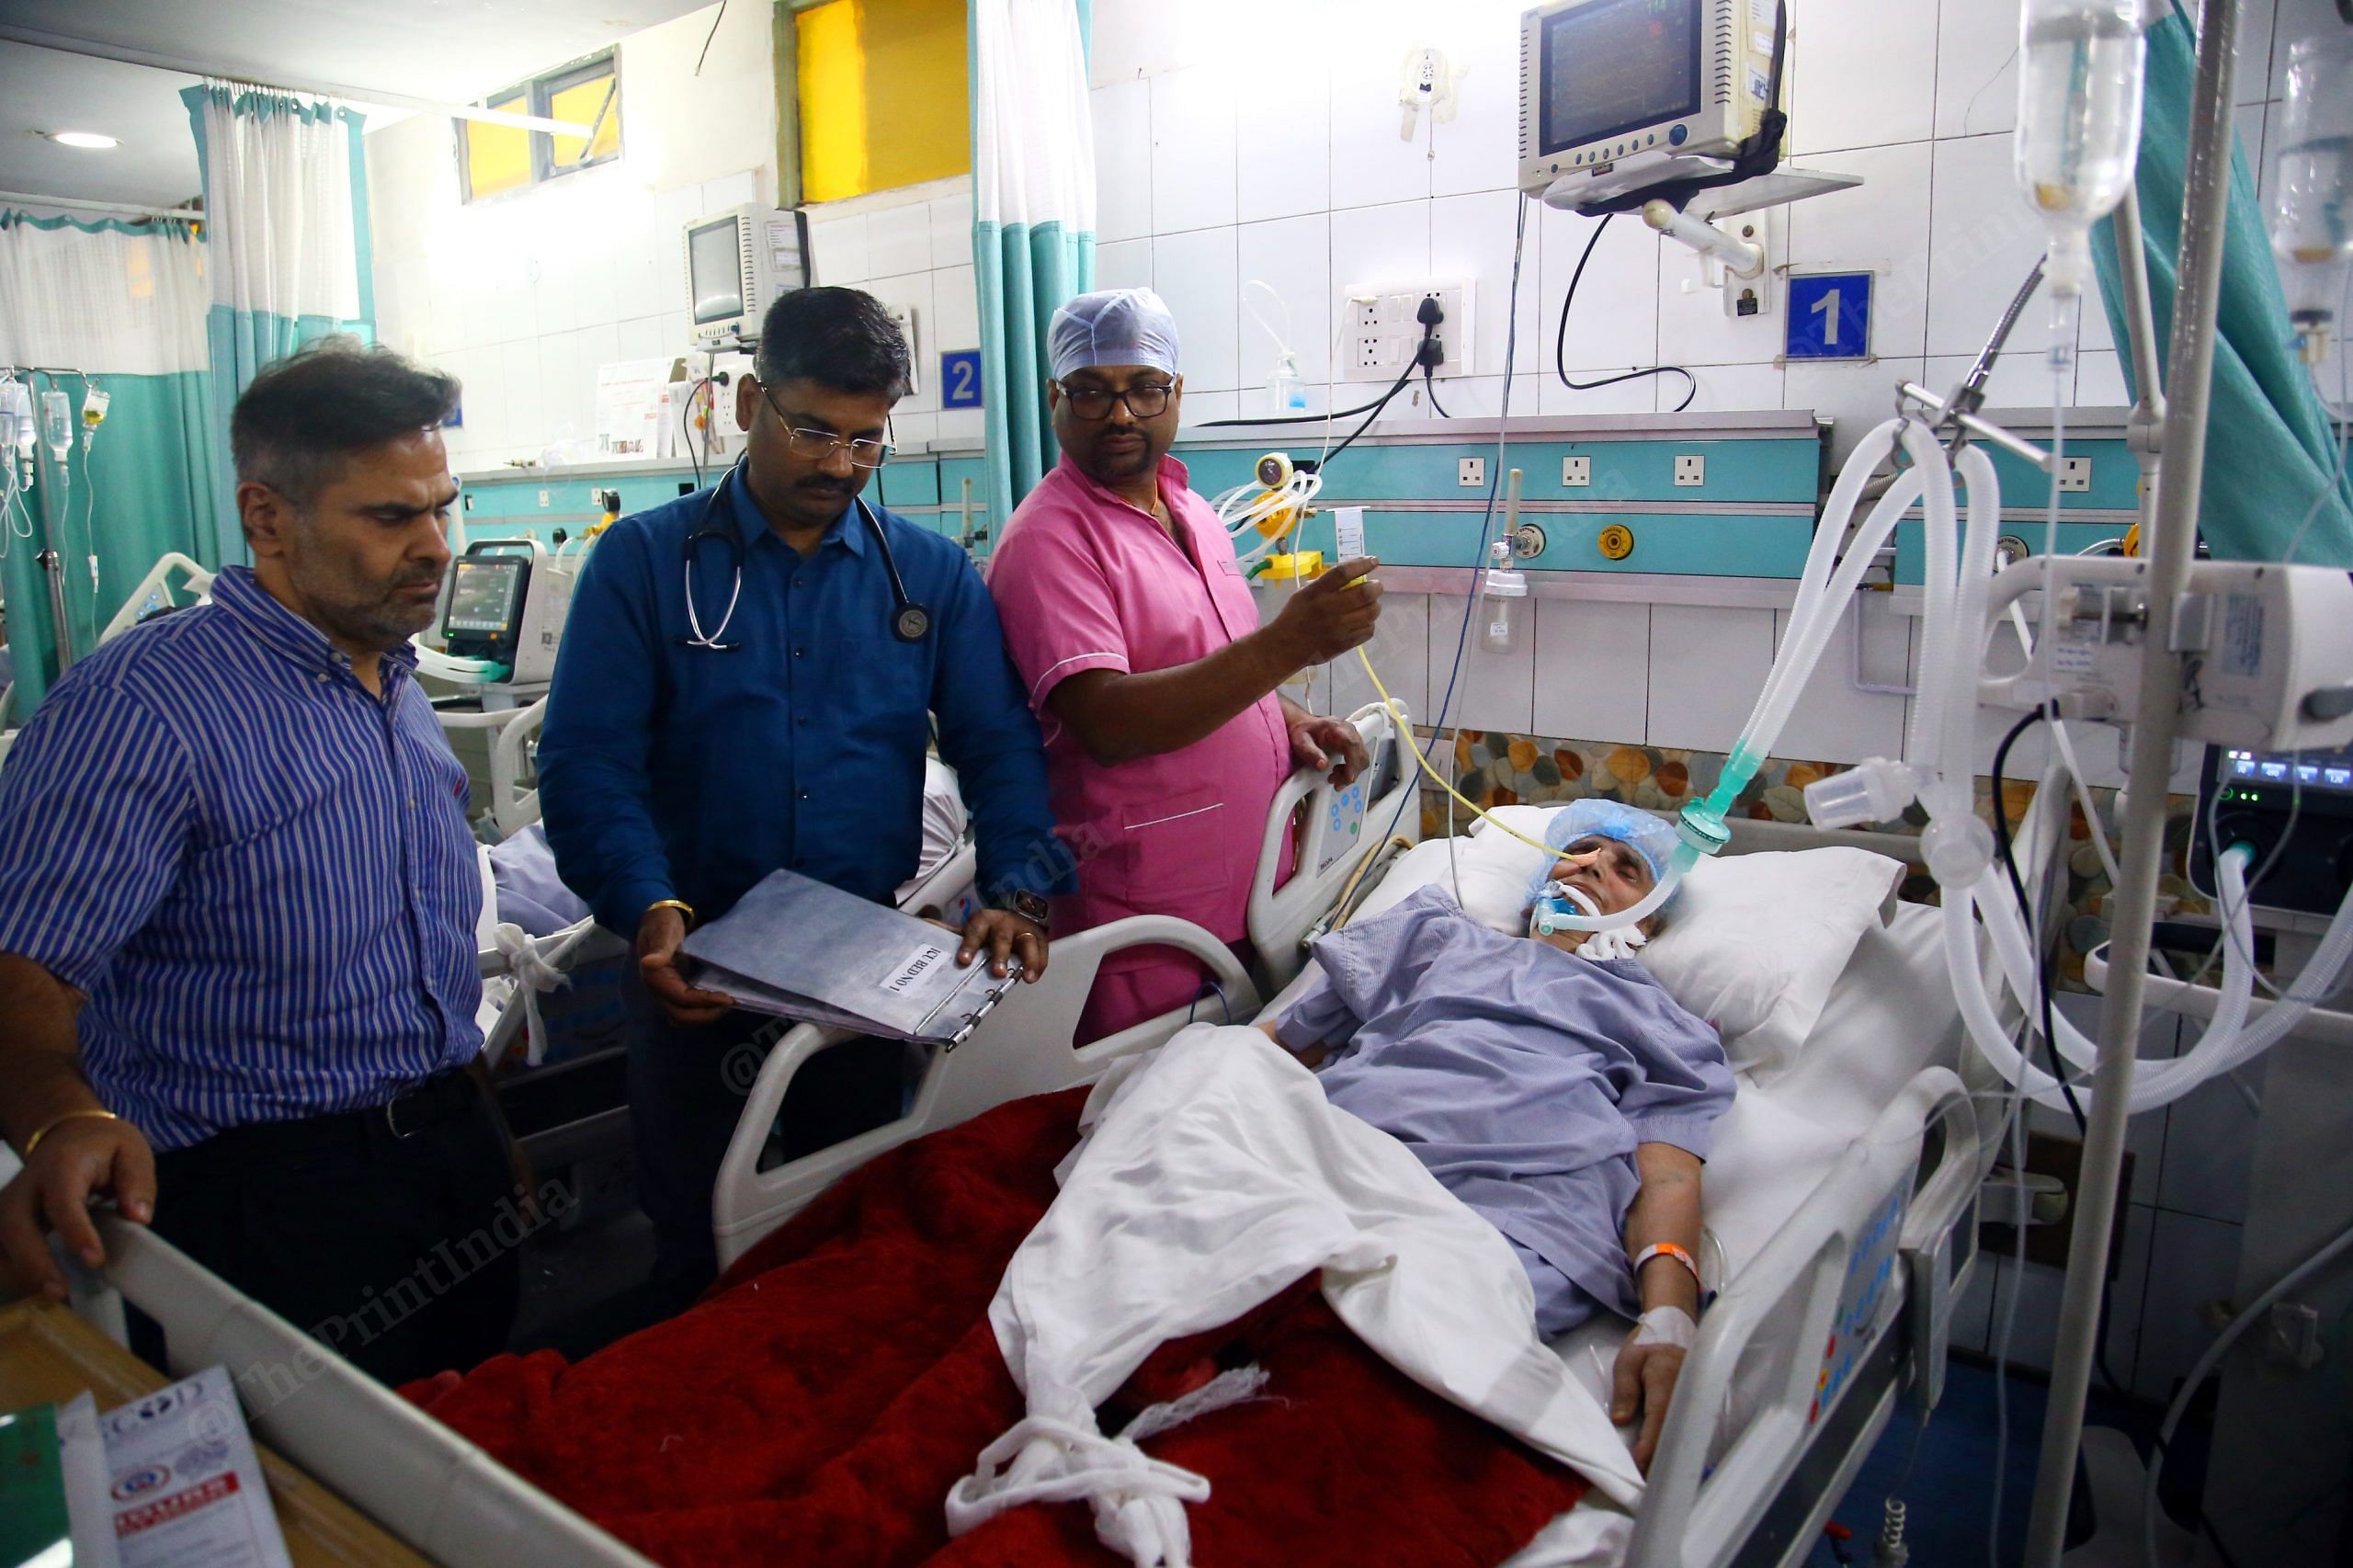 Dr Ankush Sabharwal examining a patient at Jeewan Hospital, Karol Bagh | Photo: Manisha Mondal, ThePrint